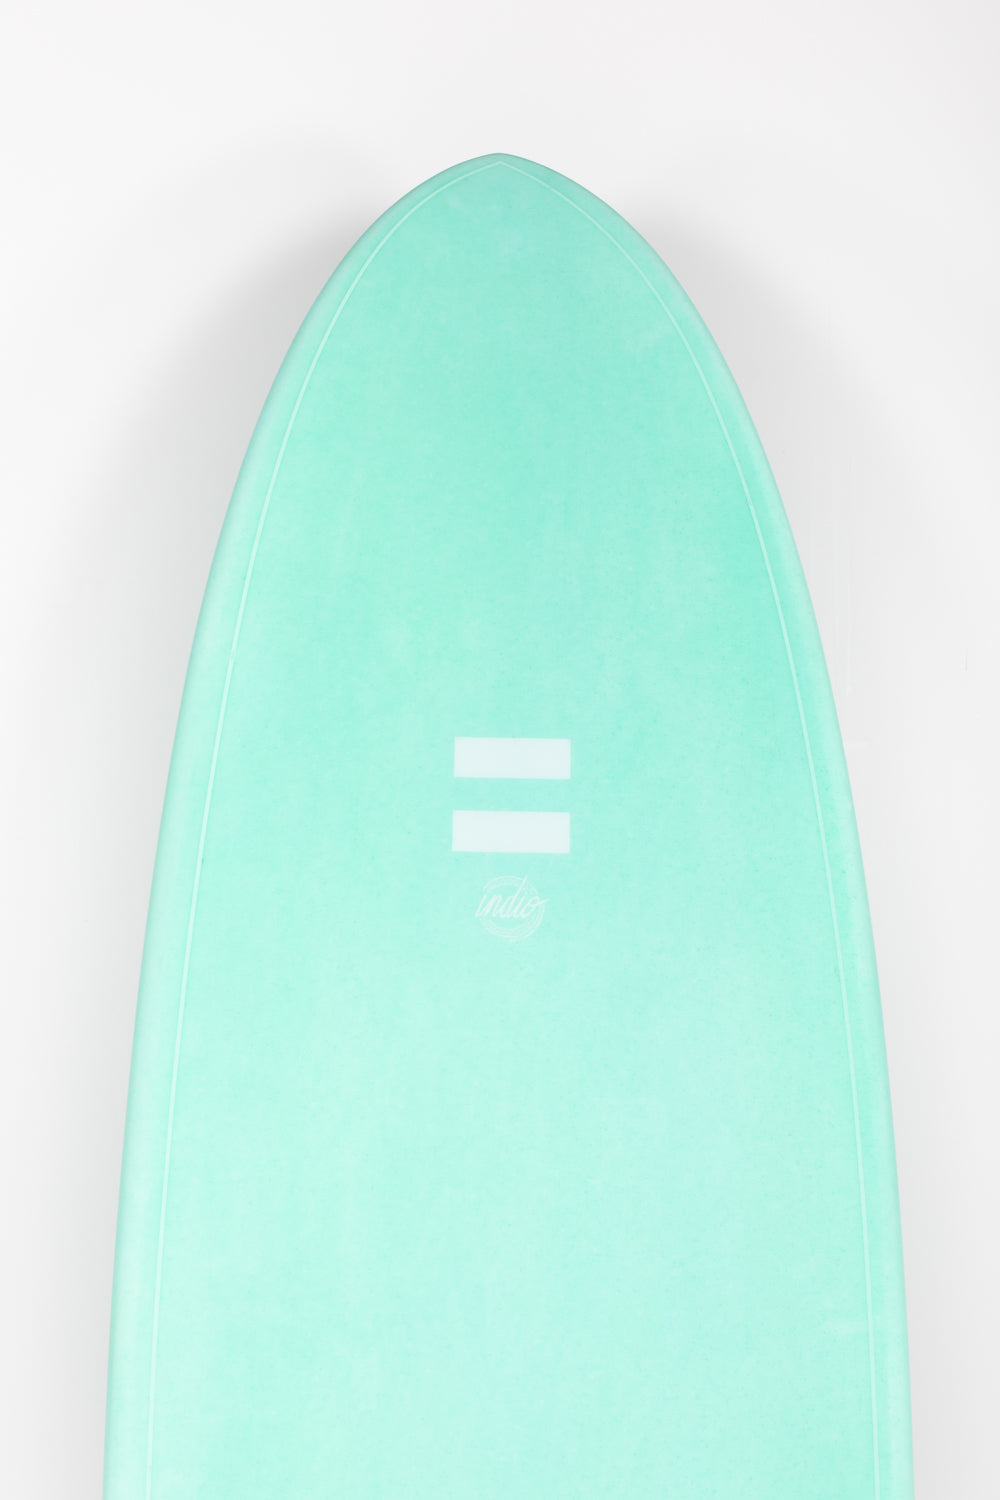 
                  
                    Pukas Surf Shop - Indio Endurance - THE EGG Aqua Mint - 7´6 x 23 x 3 - 60L
                  
                